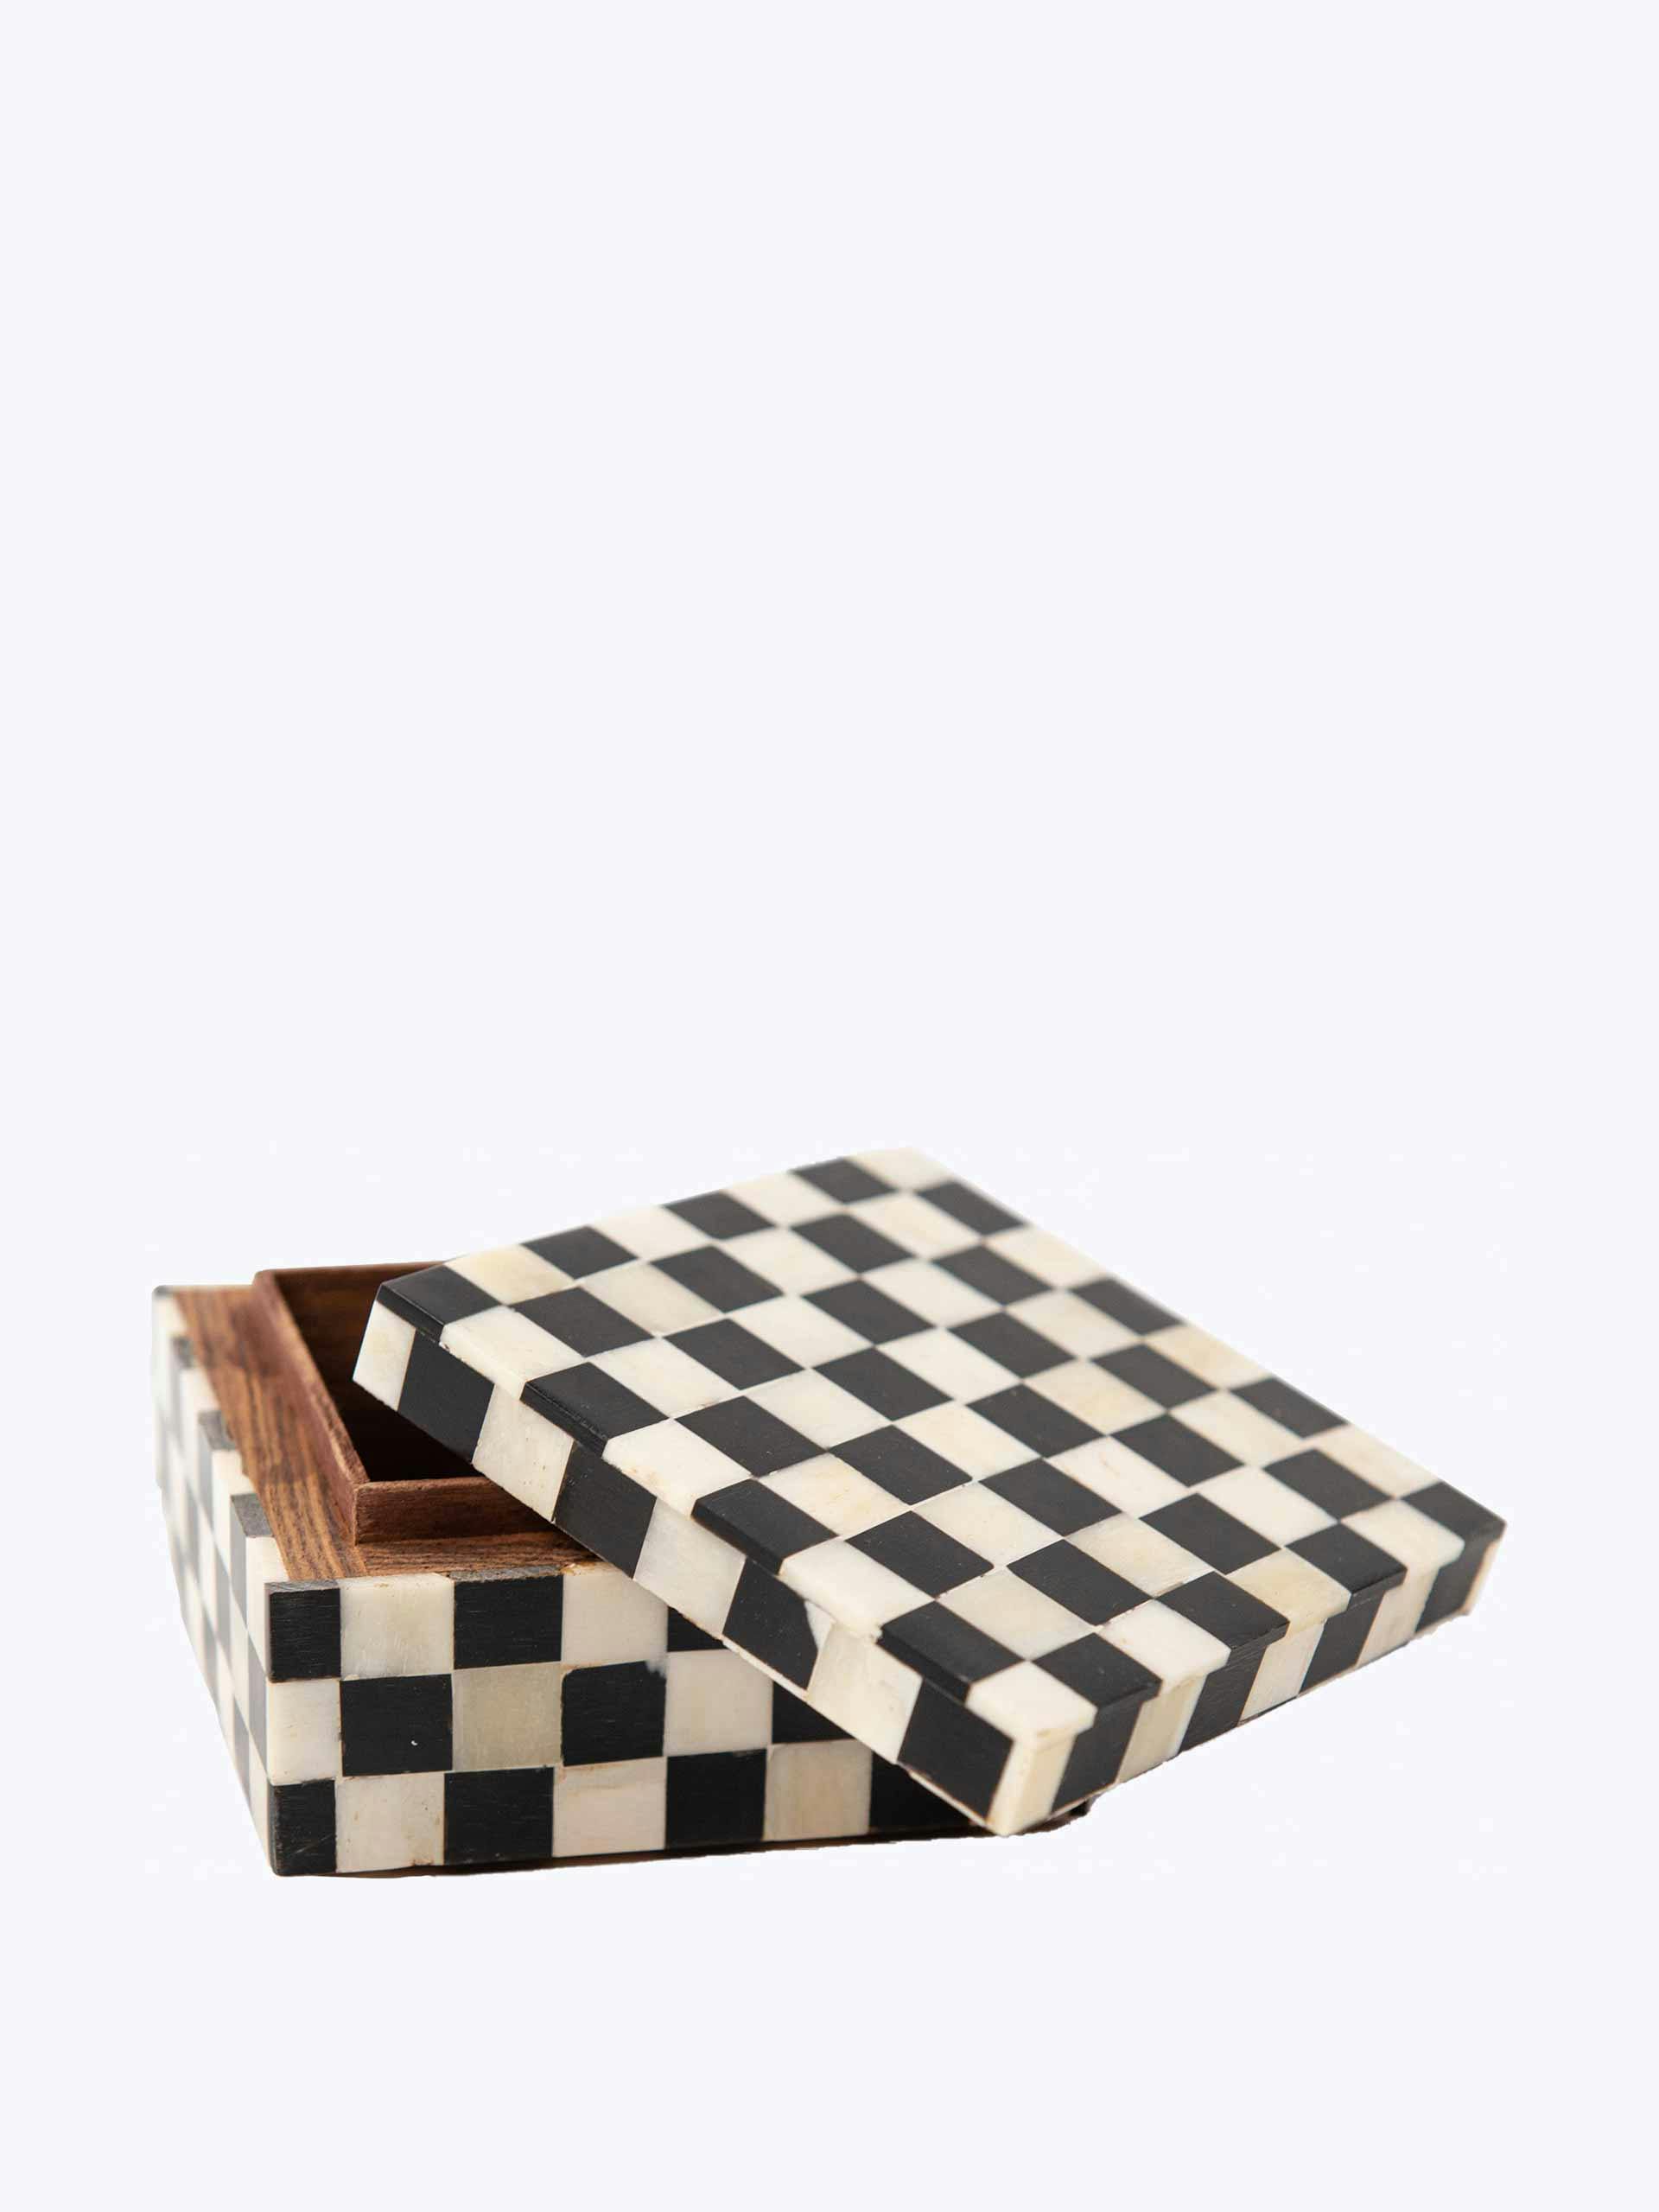 Bone and wood checkered trinket box